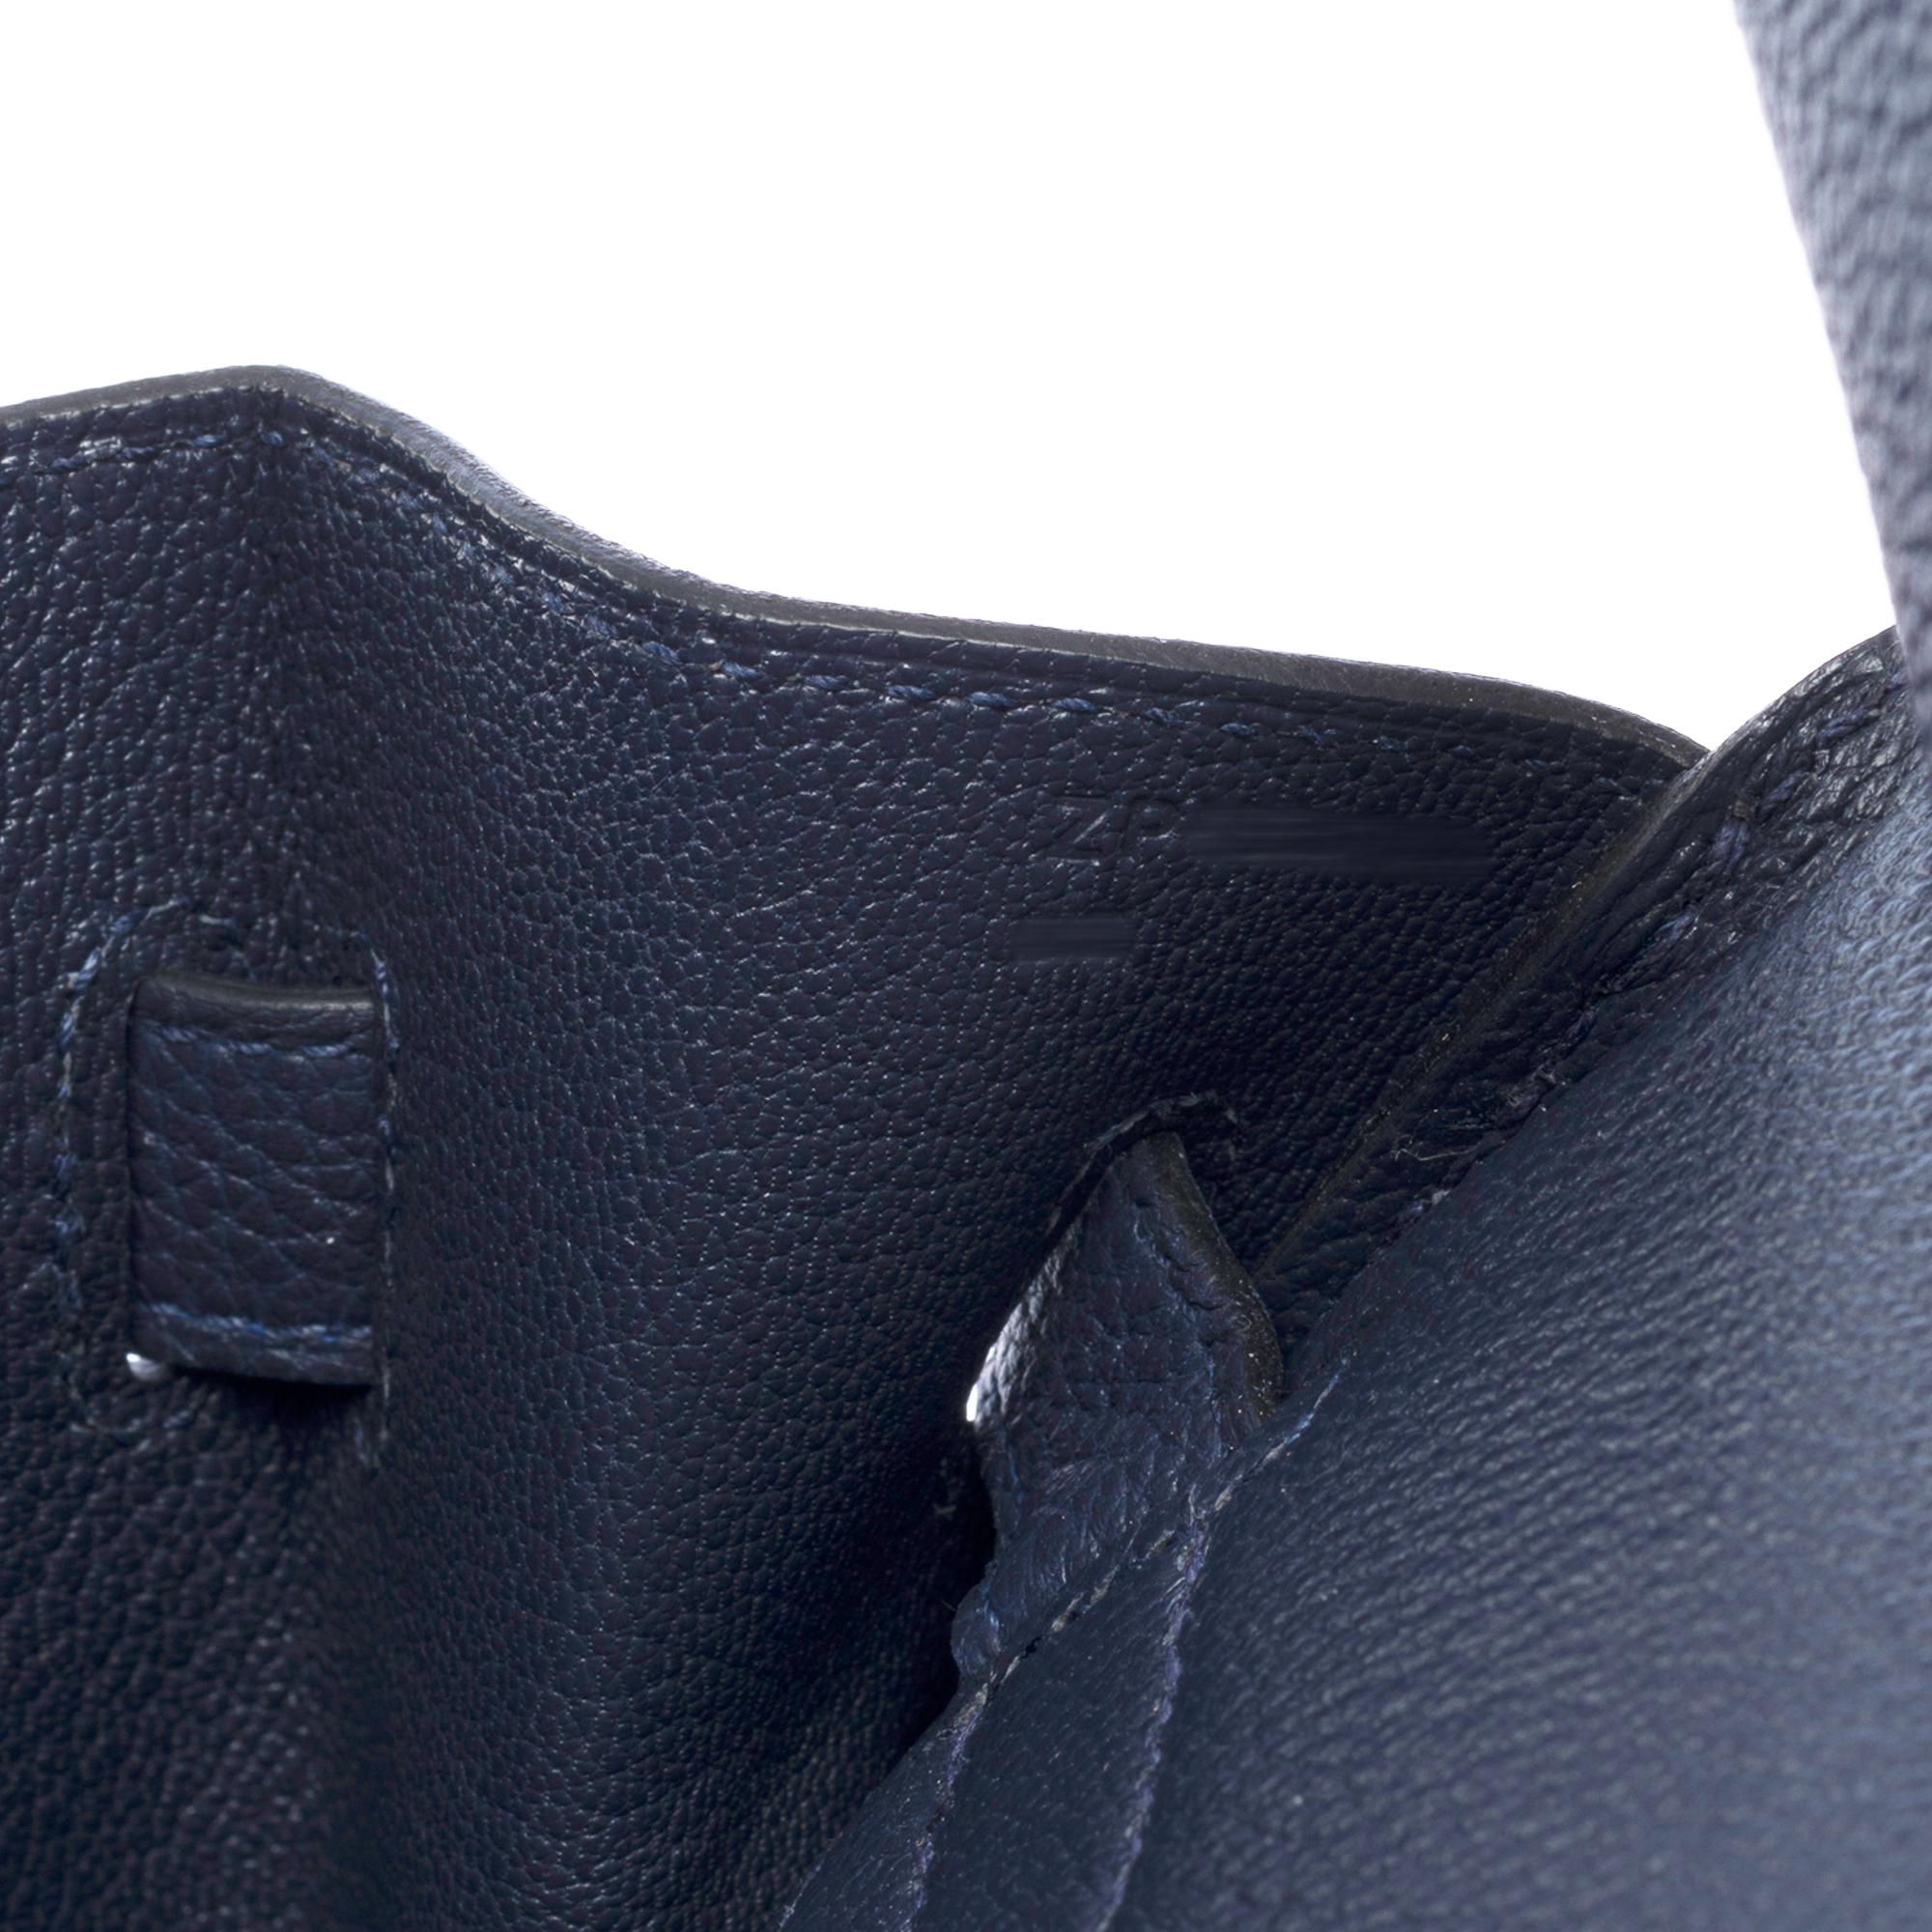 Hermes Birkin 30 handbag in Bleu nuit Togo leather, SHW For Sale 4